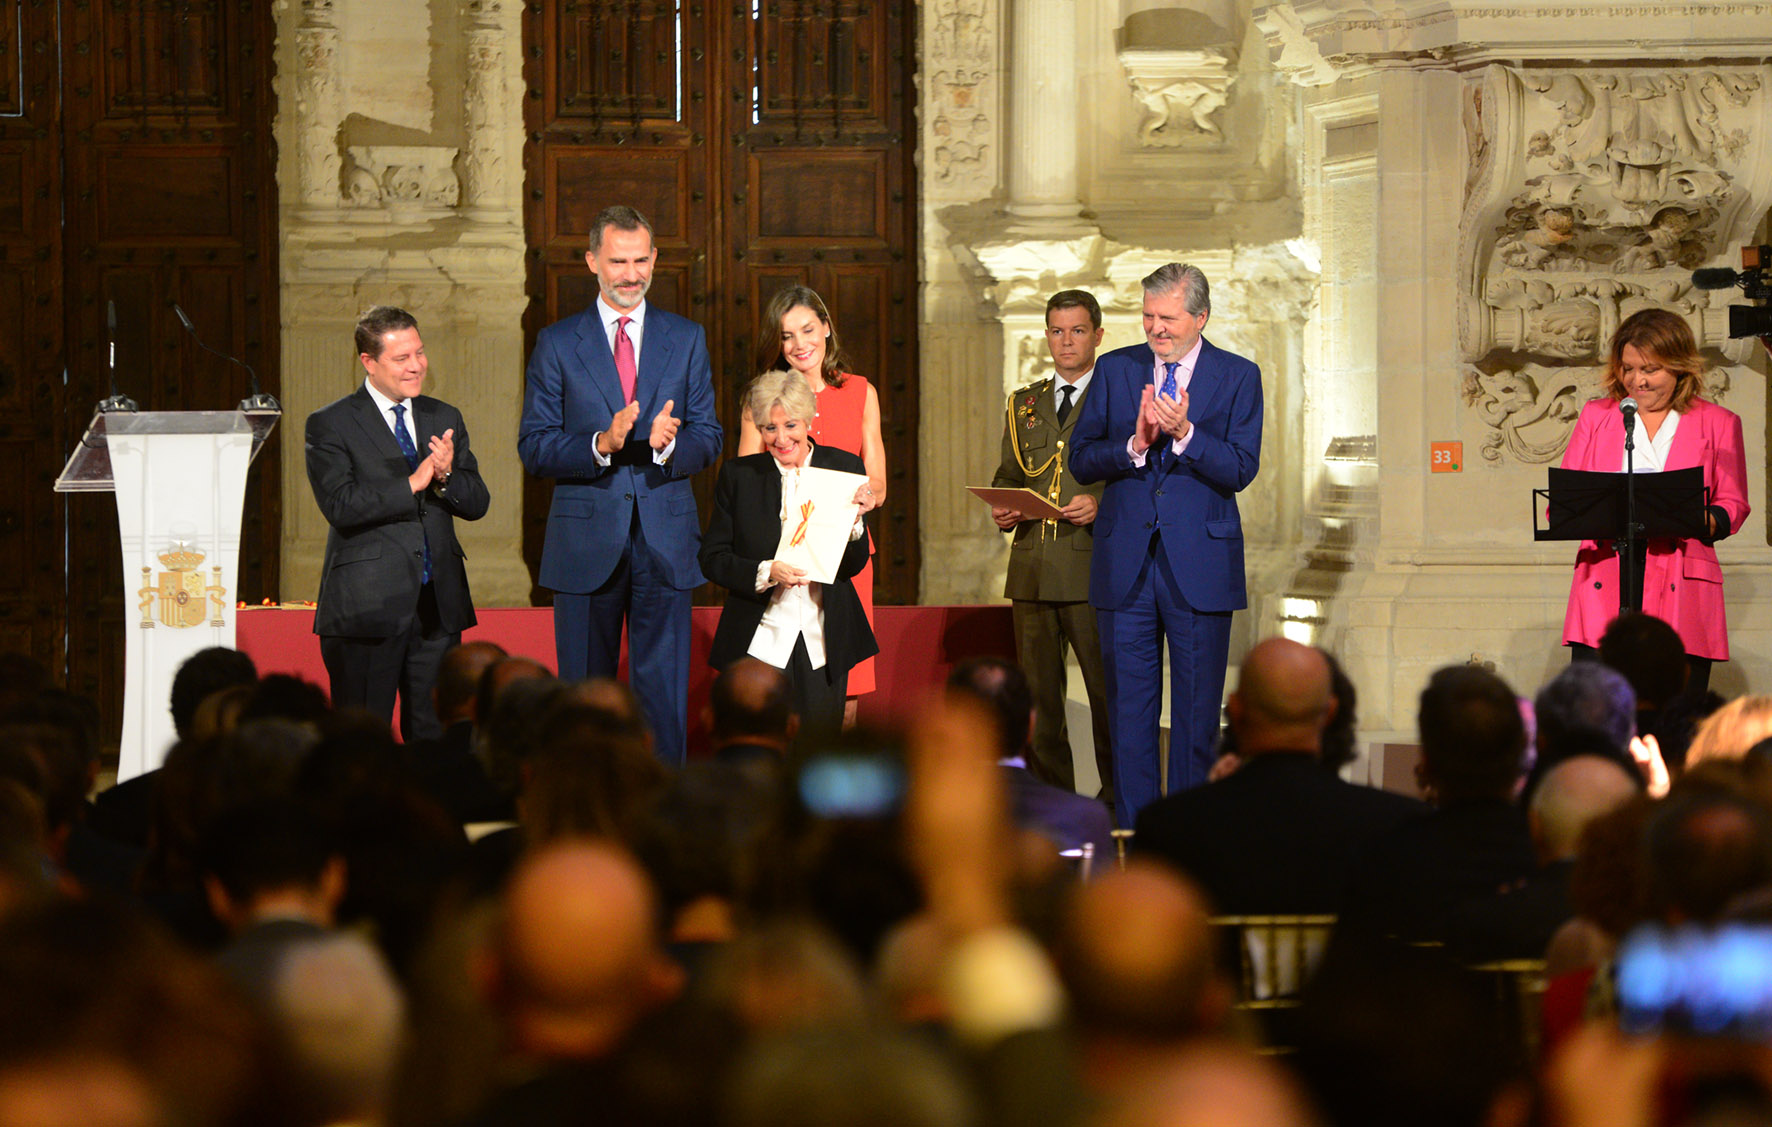 Los Reyes de España, Felipe VI y Leticia, junto con el presidente de Castilla-La Mancha, y el ministro de Educación Cultura y Deportes, Íñigo Méndez de Vigo, hacen entrega del Premio Nacional de Teatro a Concha Velasco.